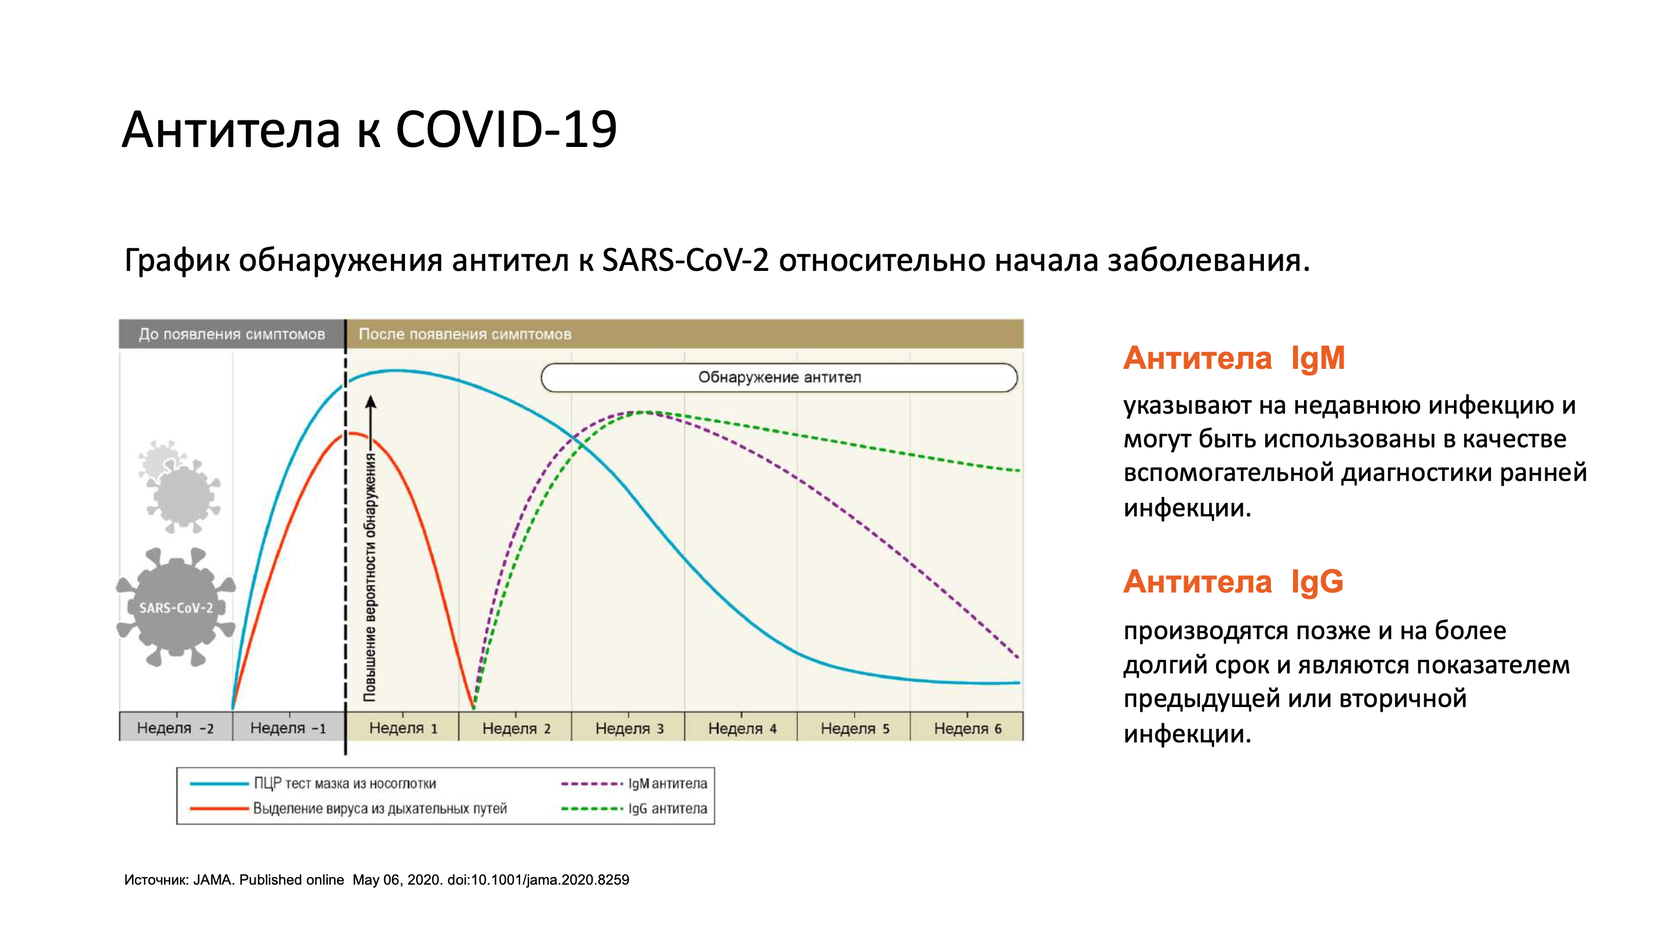 Антитела легкая форма. IGM IGG IGM коронавирус. Антитела ковид IGG. Тест на наличие антител к Covid-19. Количество антител в крови.